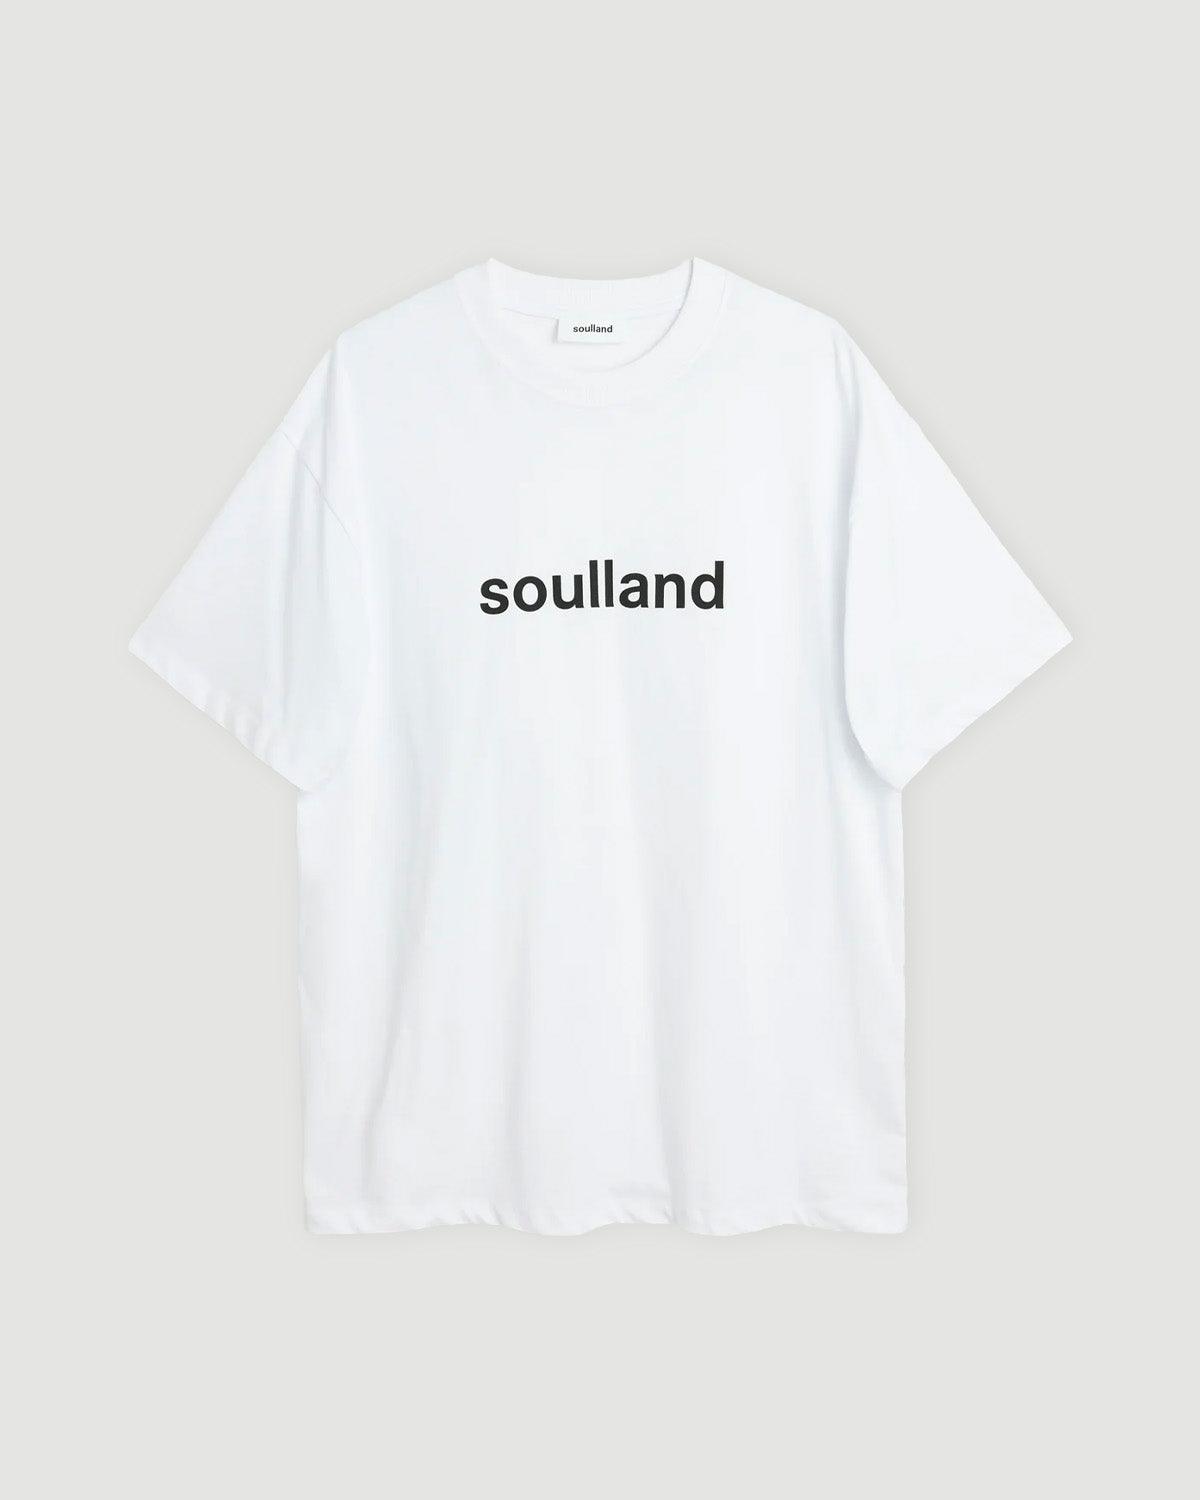 Ocean Org Tshirt - soulland - Kul og Koks